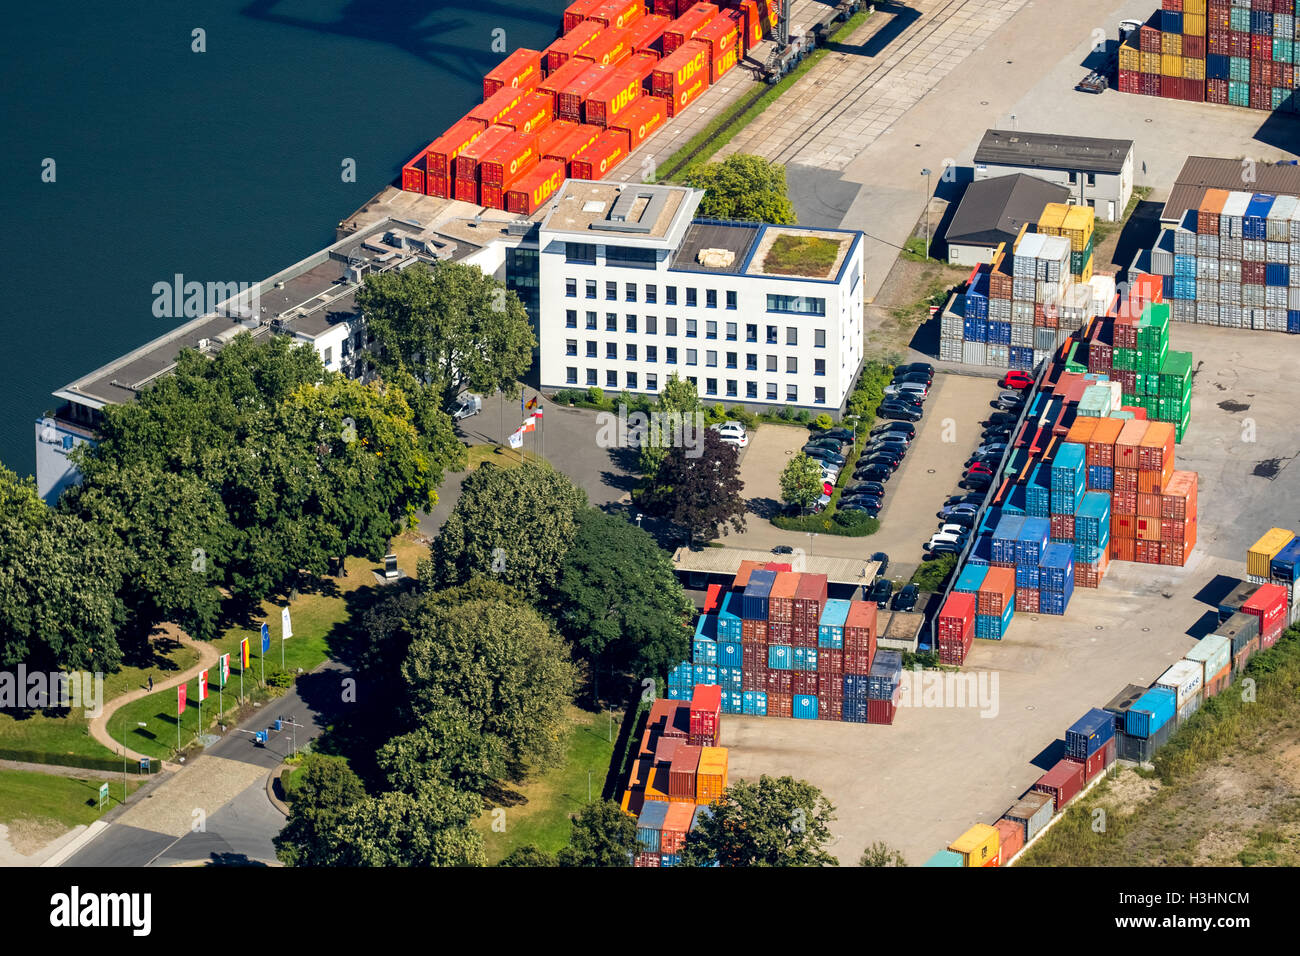 Vue aérienne, Duisport, le plus grand port intérieur d'Europe, Port de Duisburg société, Rhin, de la Ruhr, Duisburg, Banque D'Images